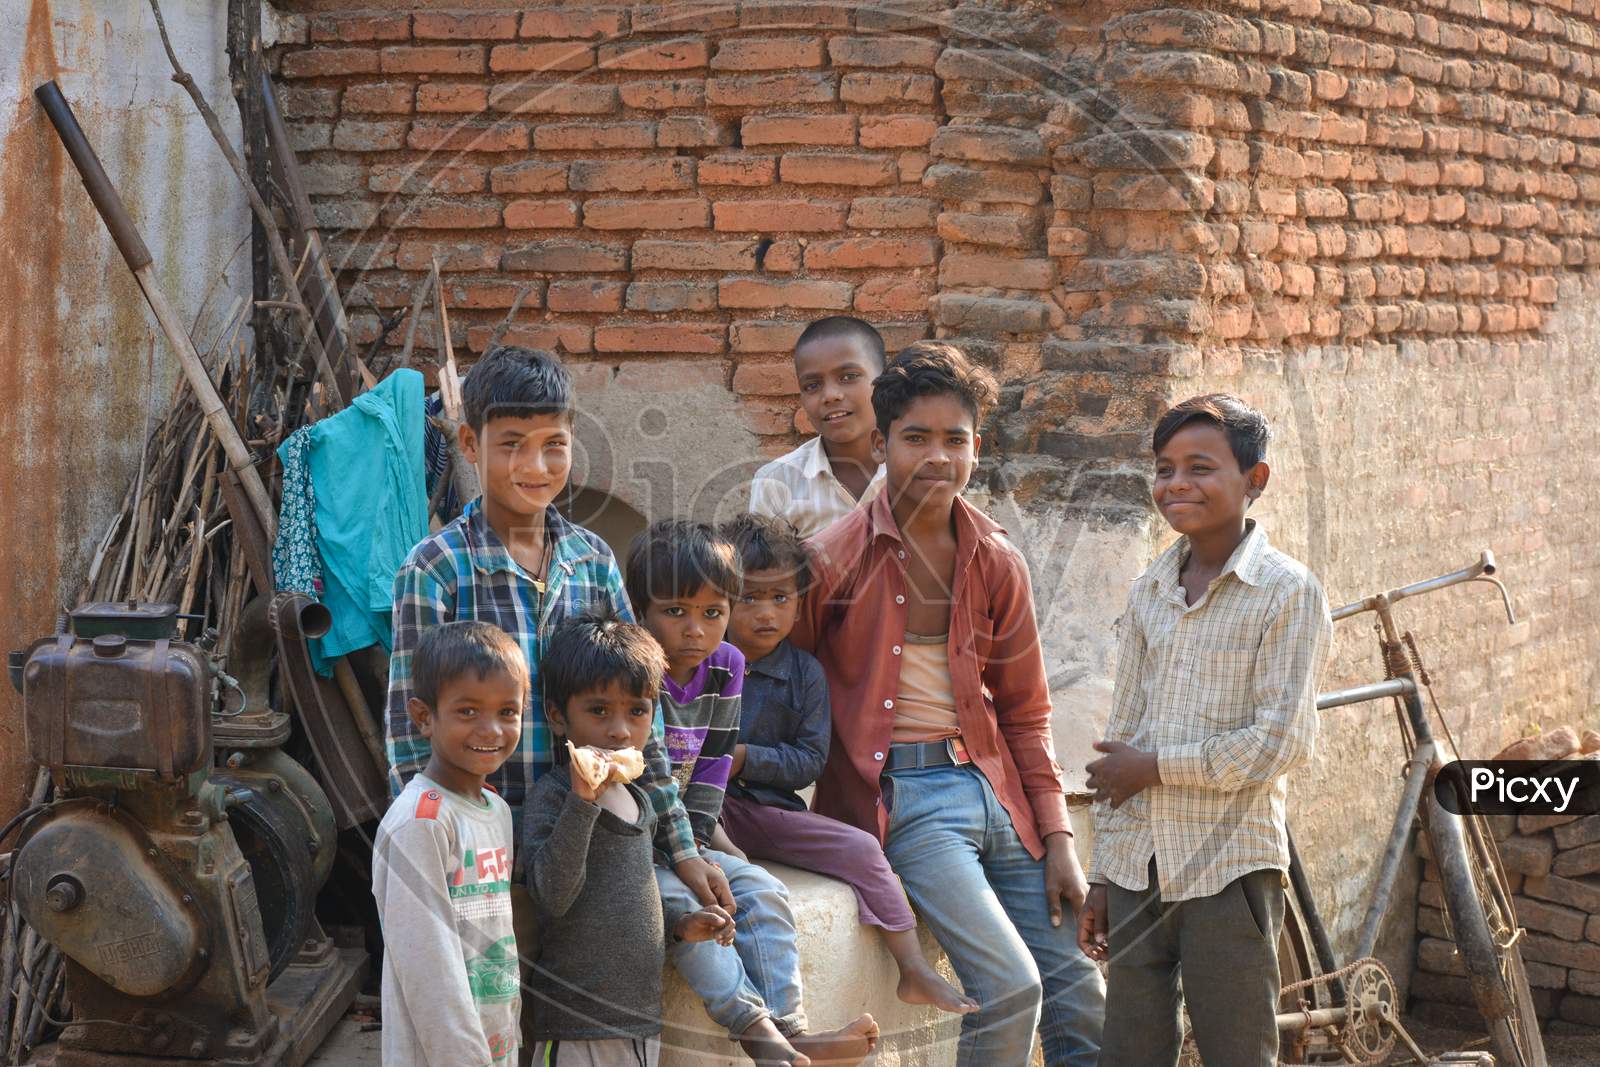 TIKAMGARH, MADHYA PRADESH, INDIA - NOVEMBER 15, 2019: Smiling faces, group of children smiling and having fun and looking at the camera.